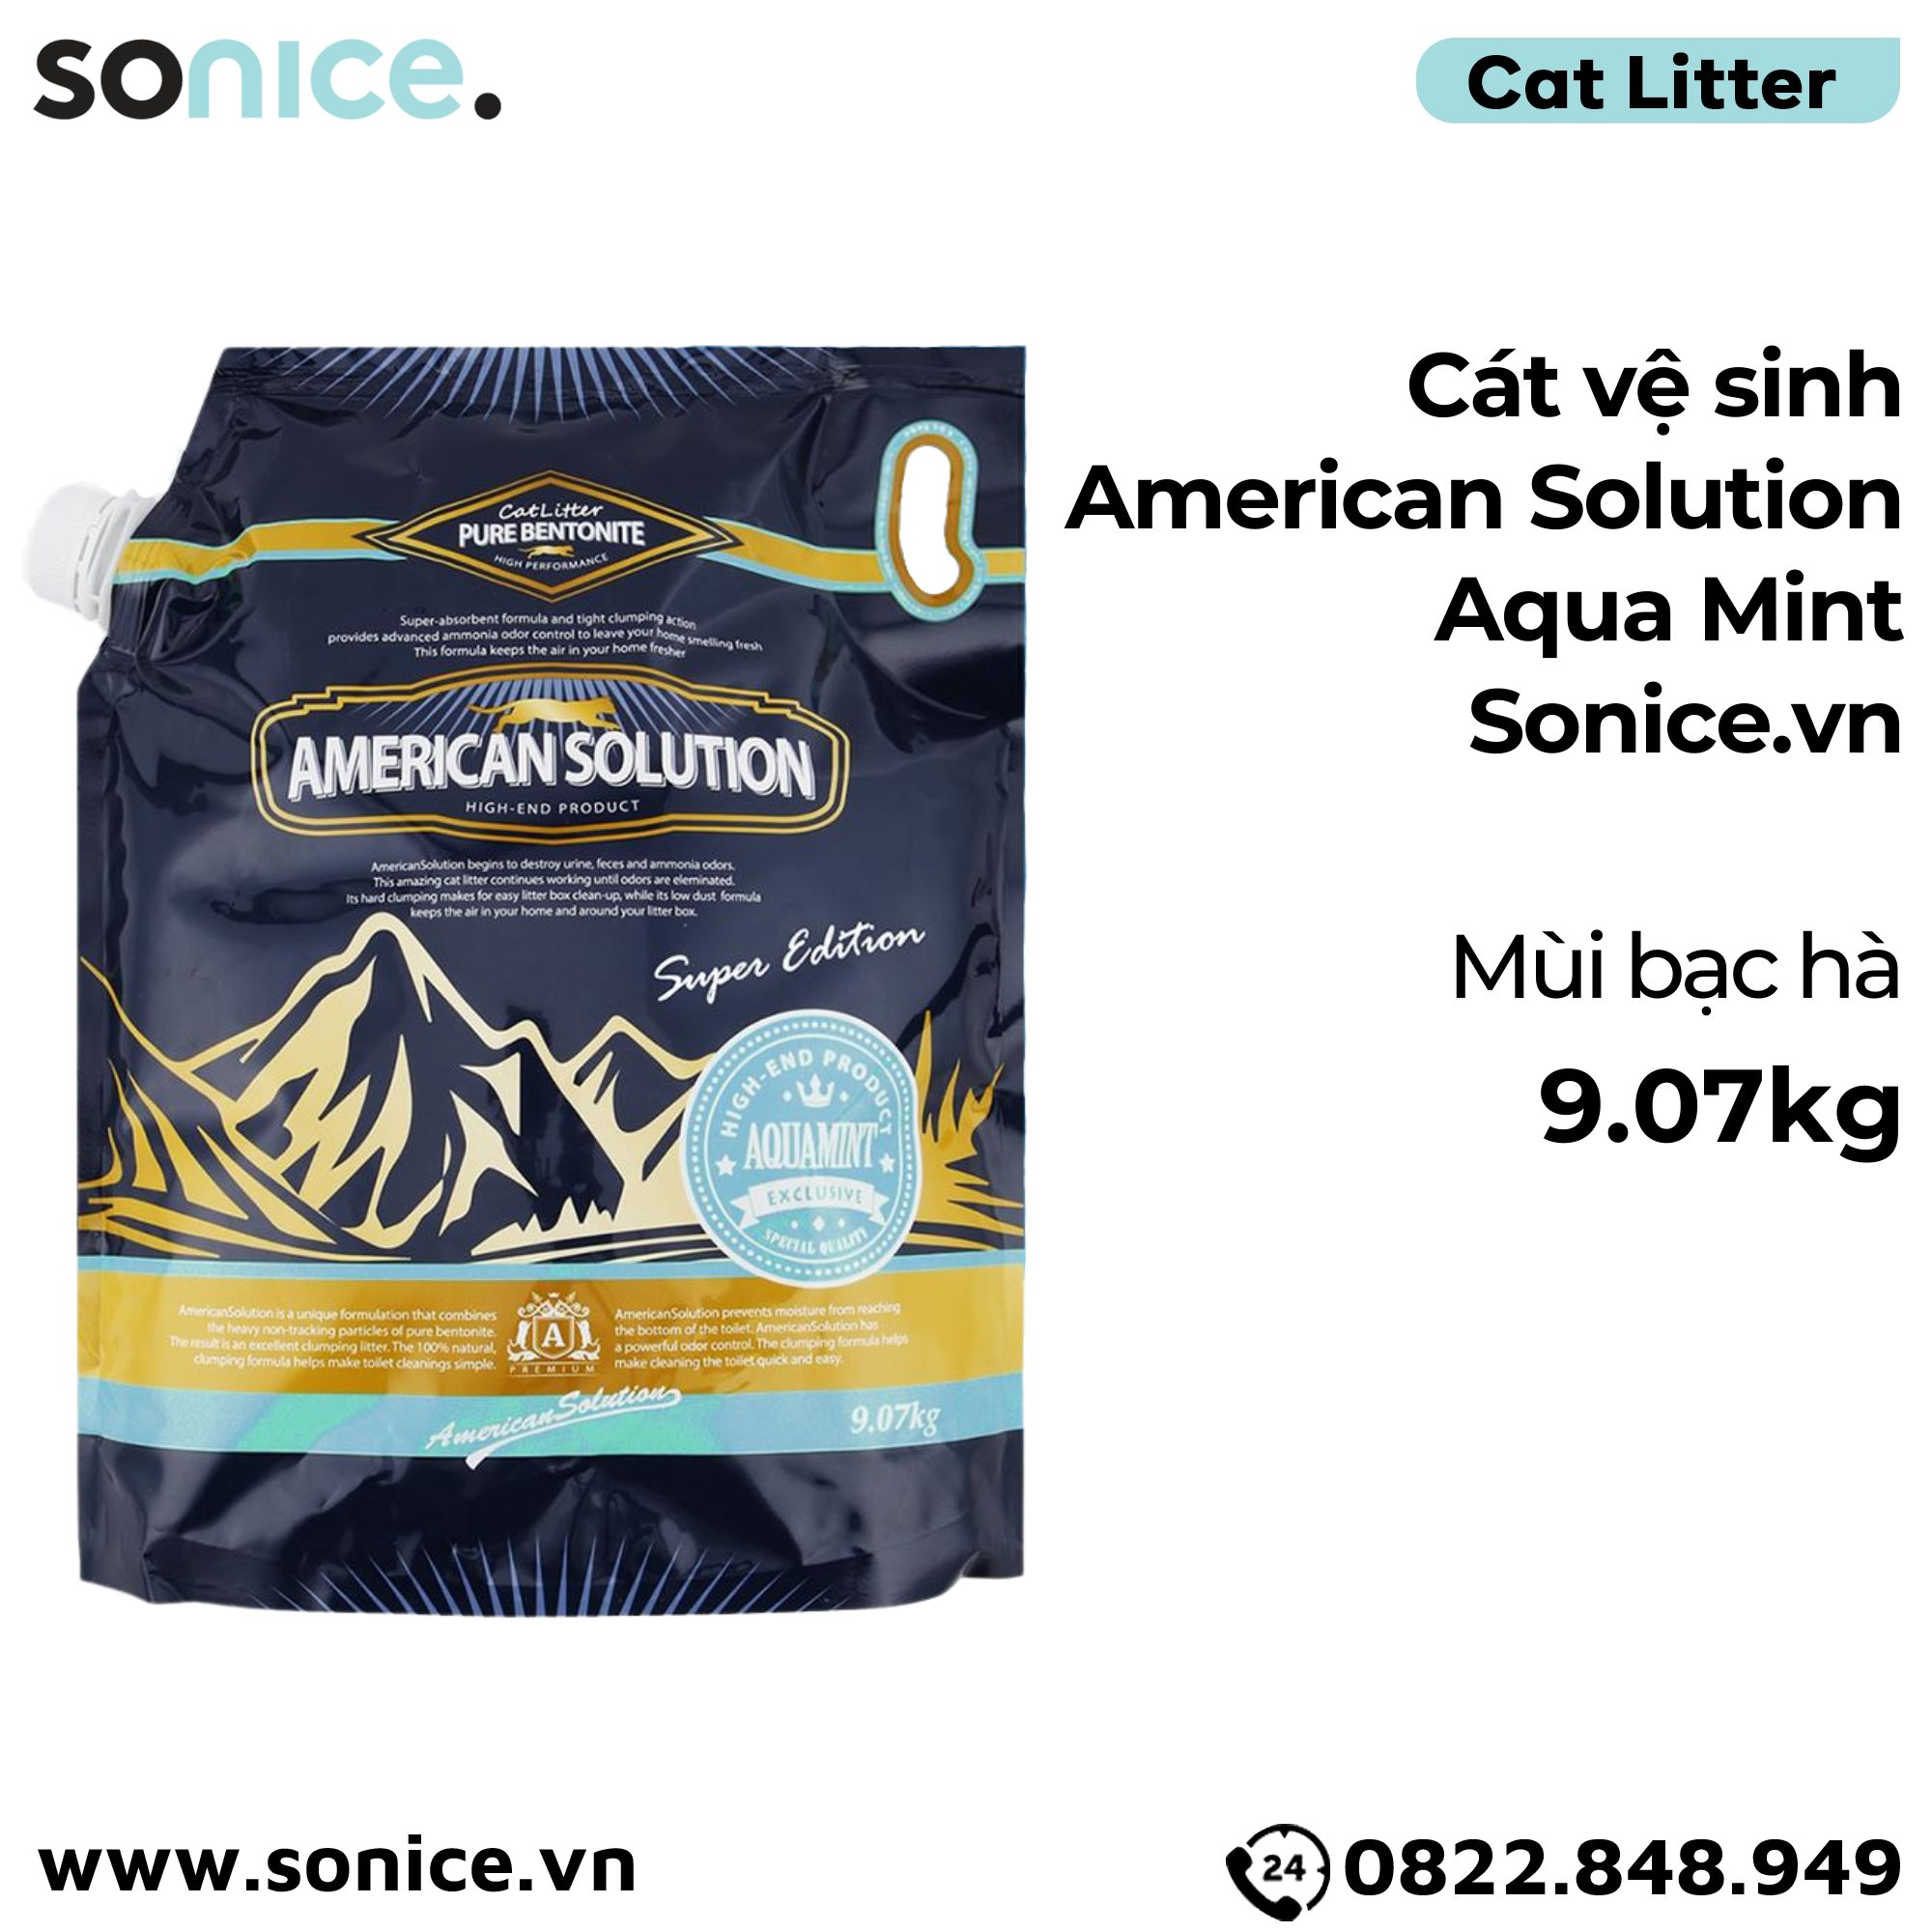  Cát vệ sinh American Solution Aqua Mint 9kg - mùi bạc hà SONICE. 